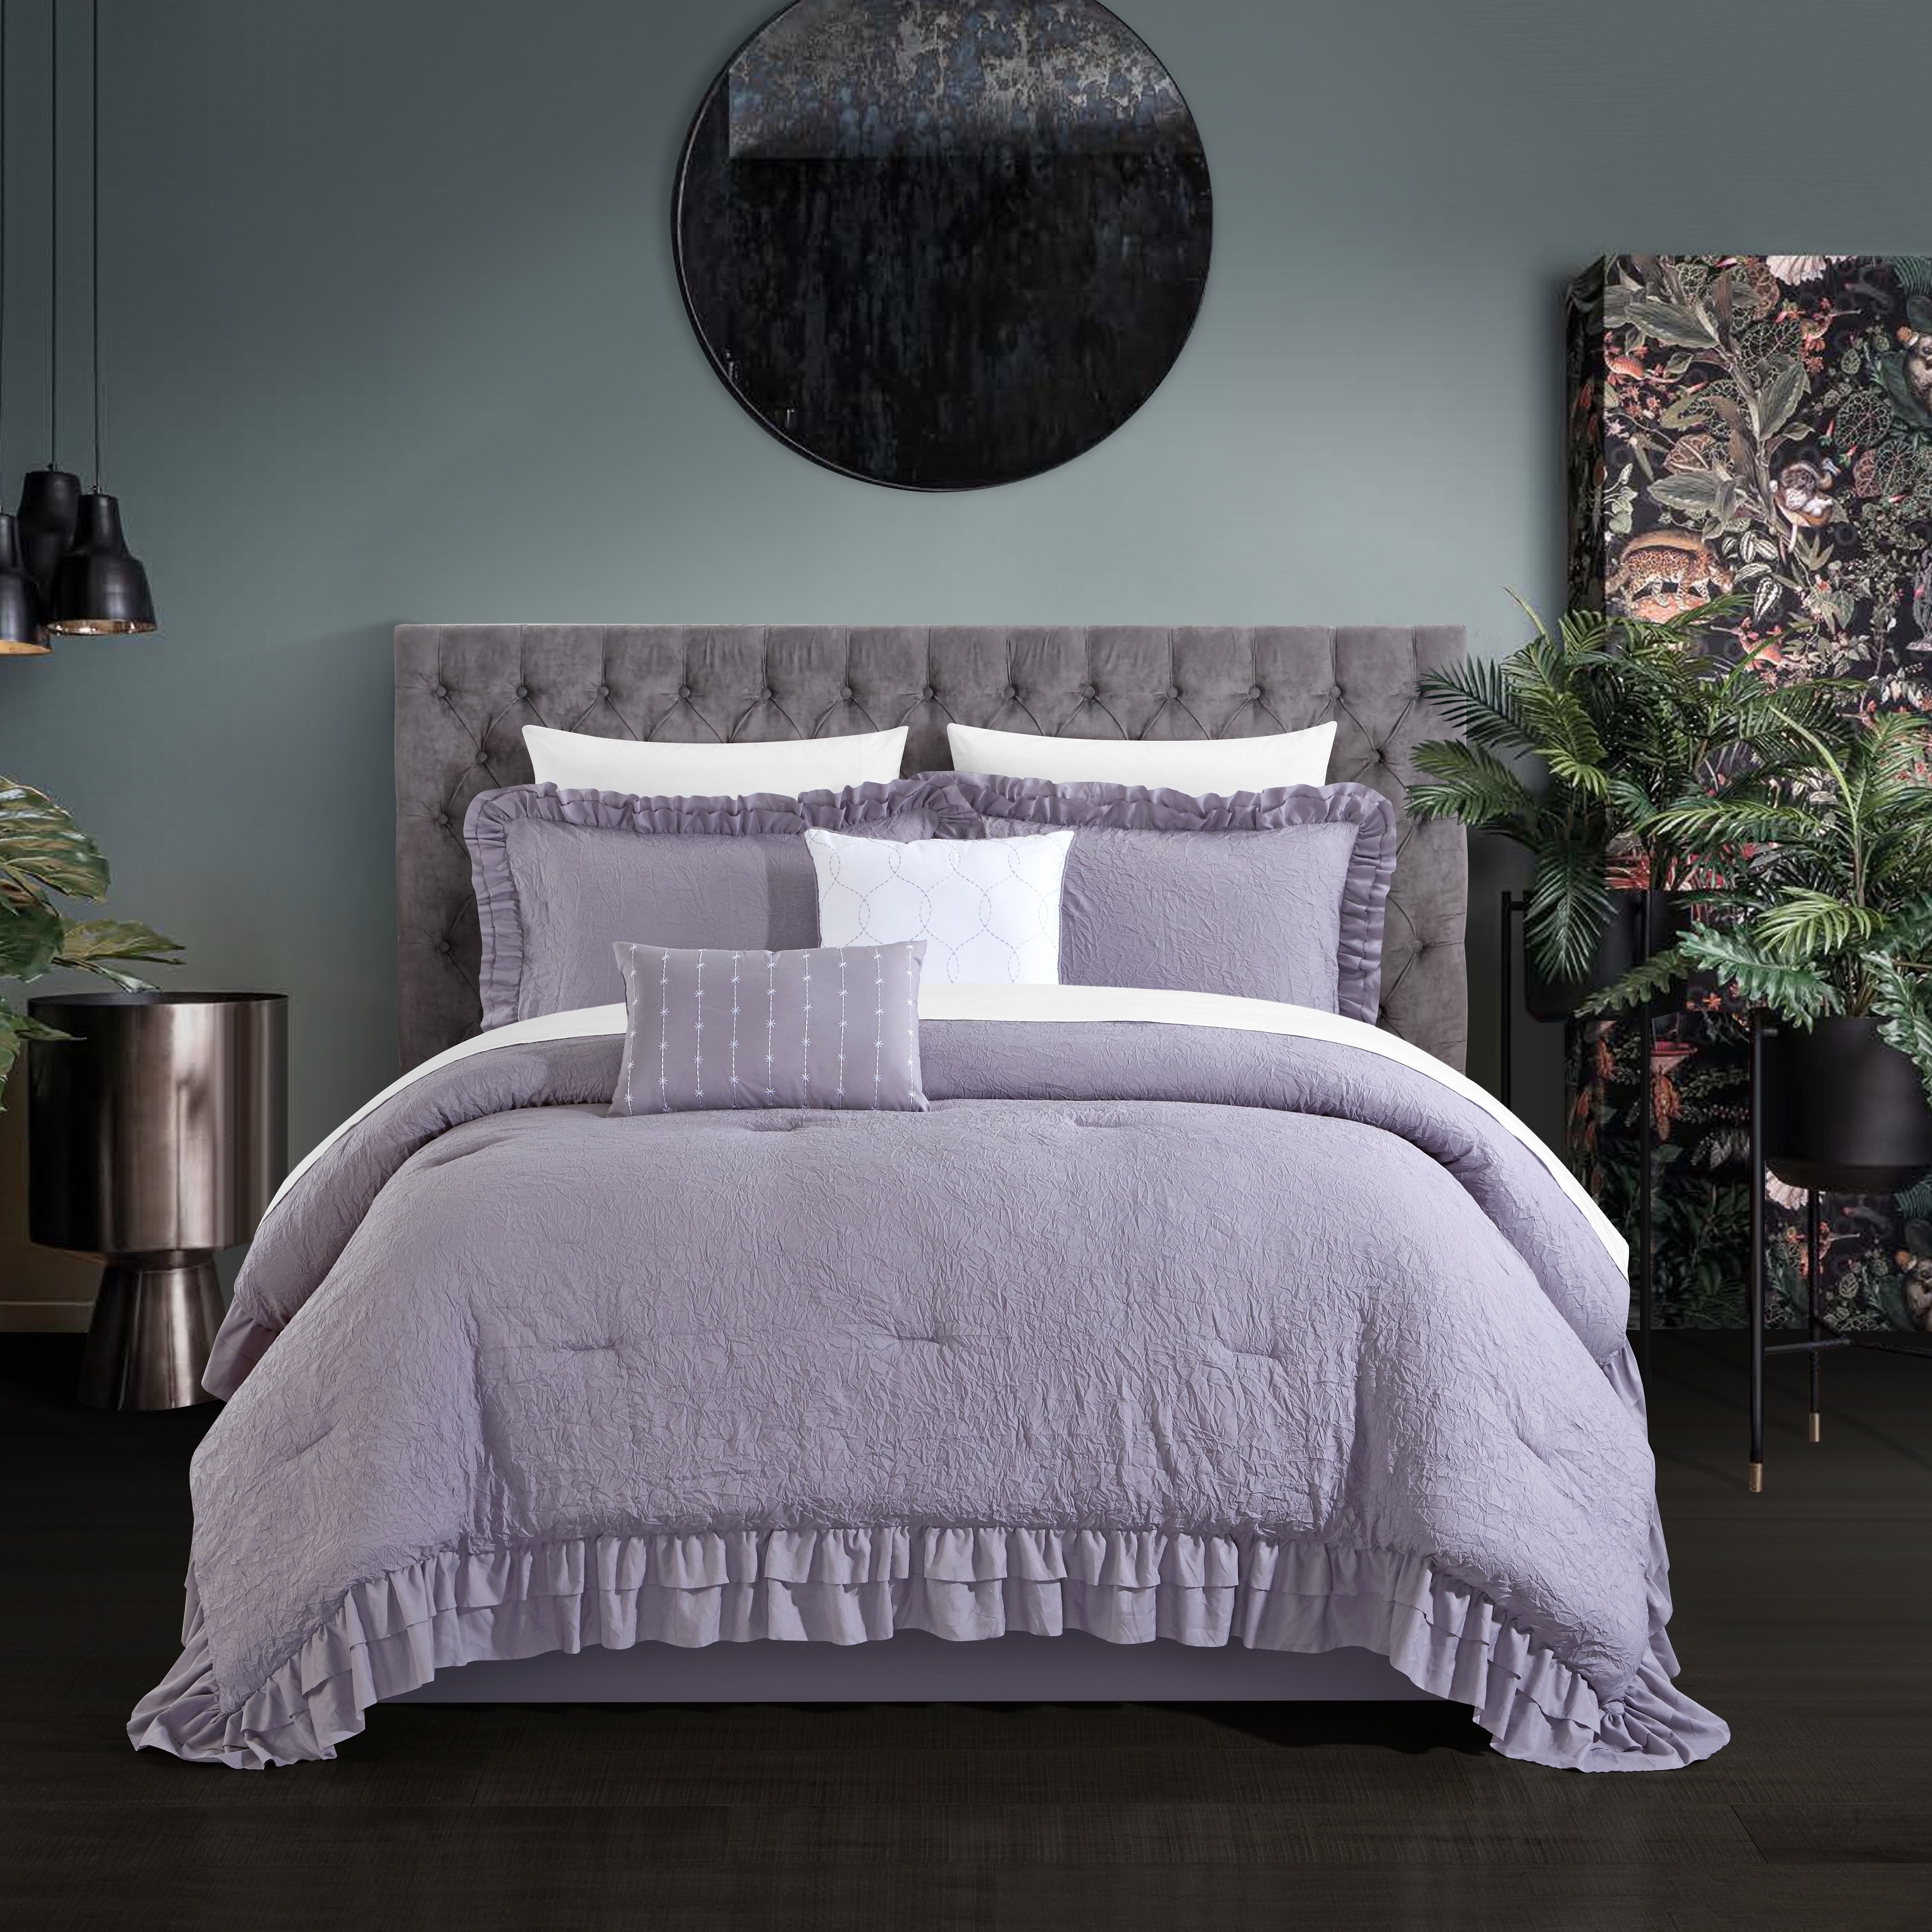 5 Piece Kensley Comforter Set Washed Crinkle Ruffled Flange Border Design Bedding - Lavender, Twin